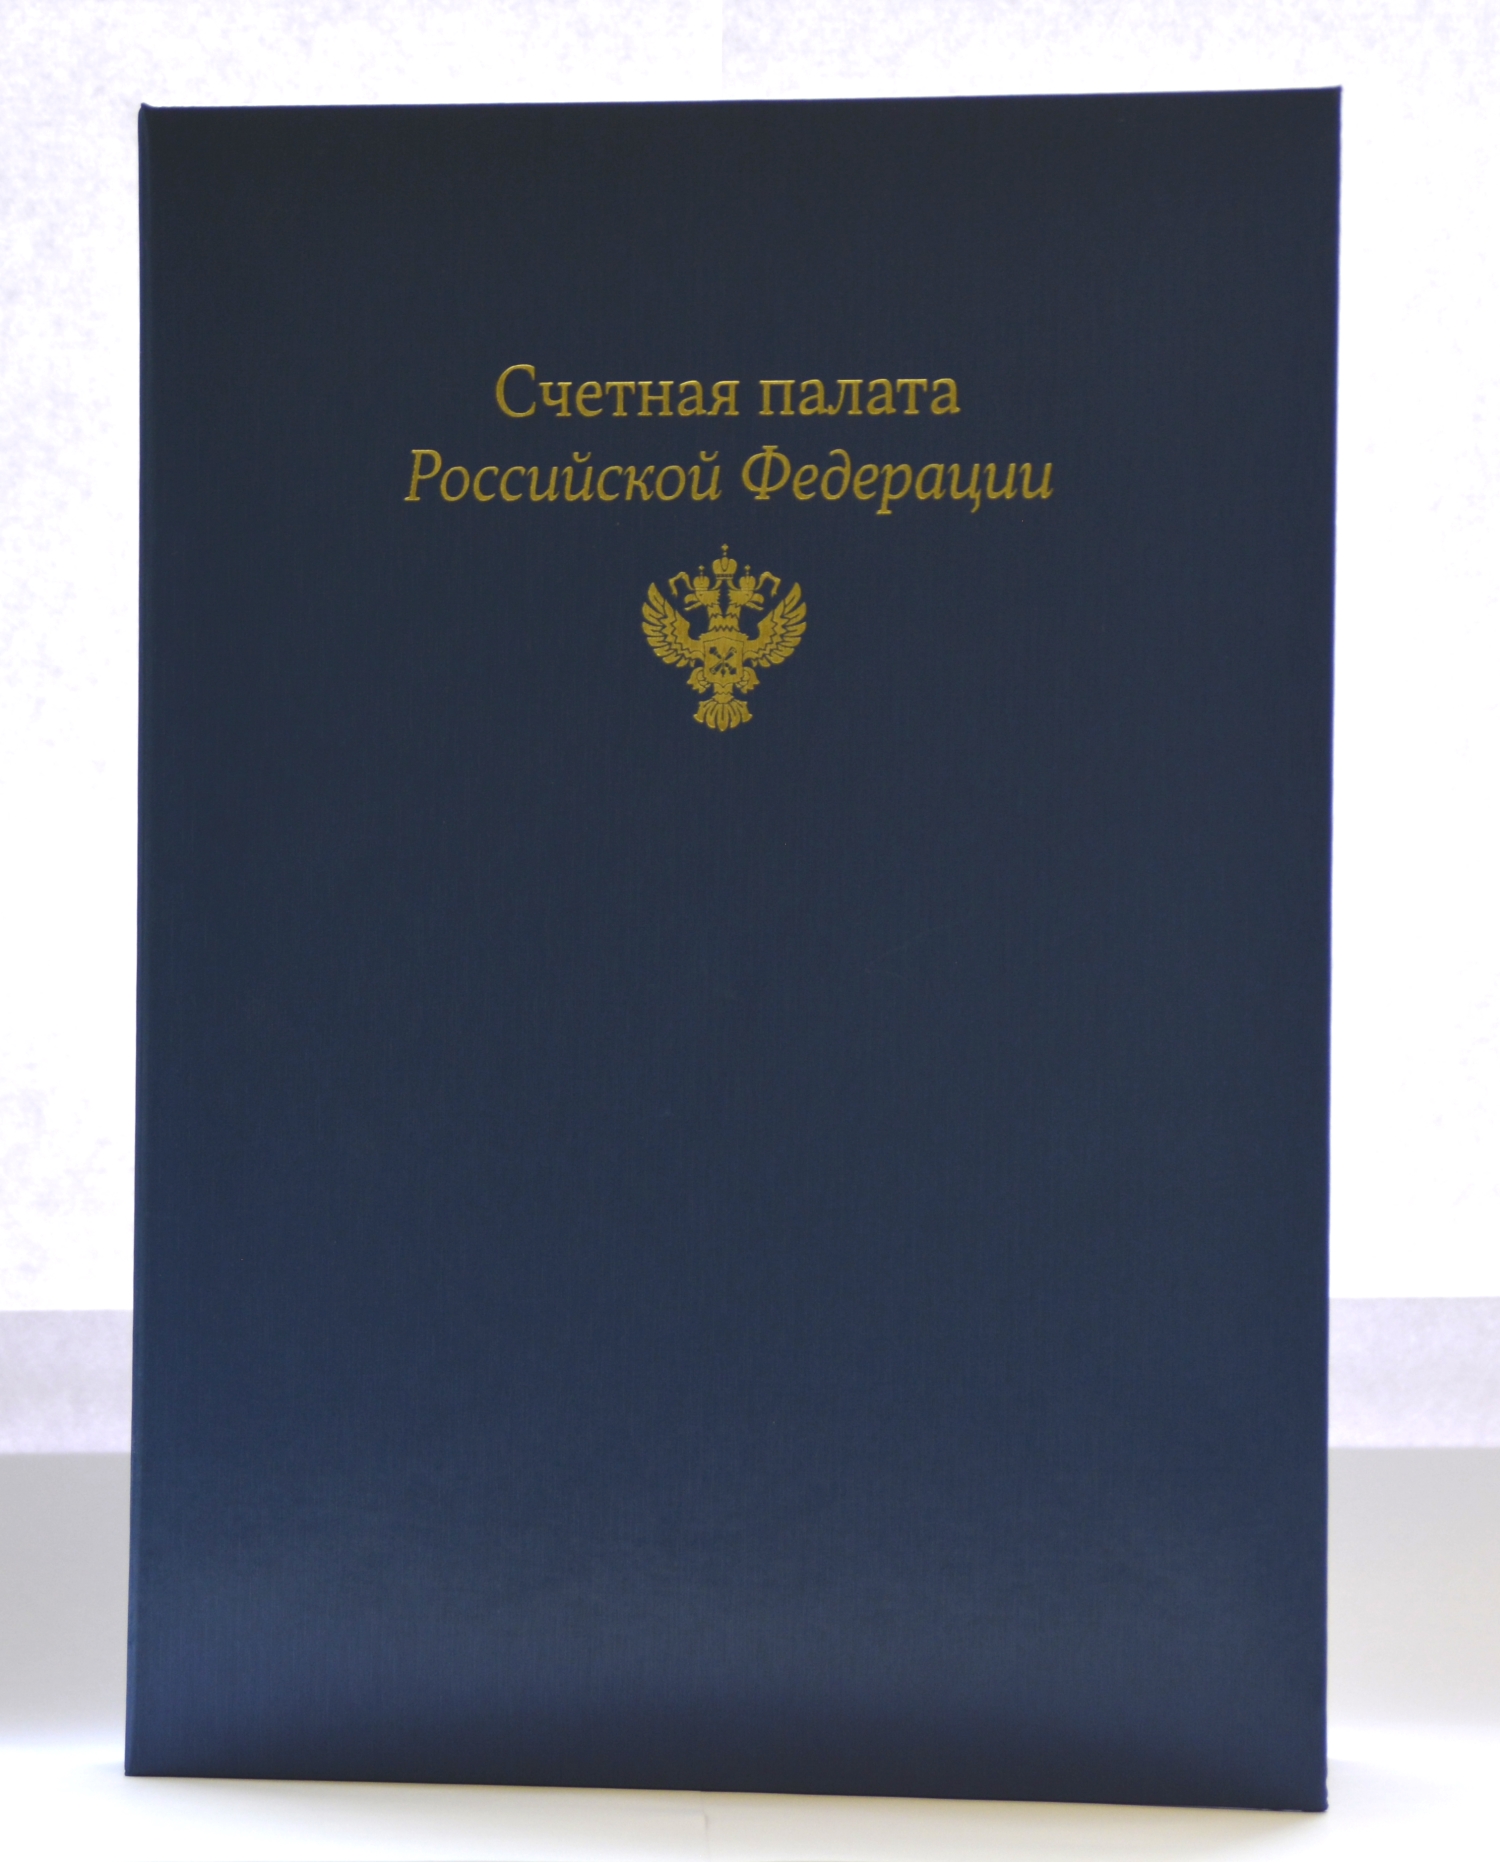 Коллектив Контрольно-счетной палаты Санкт-Петербурга отмечен Благодарственным письмом Счетной палаты РФ